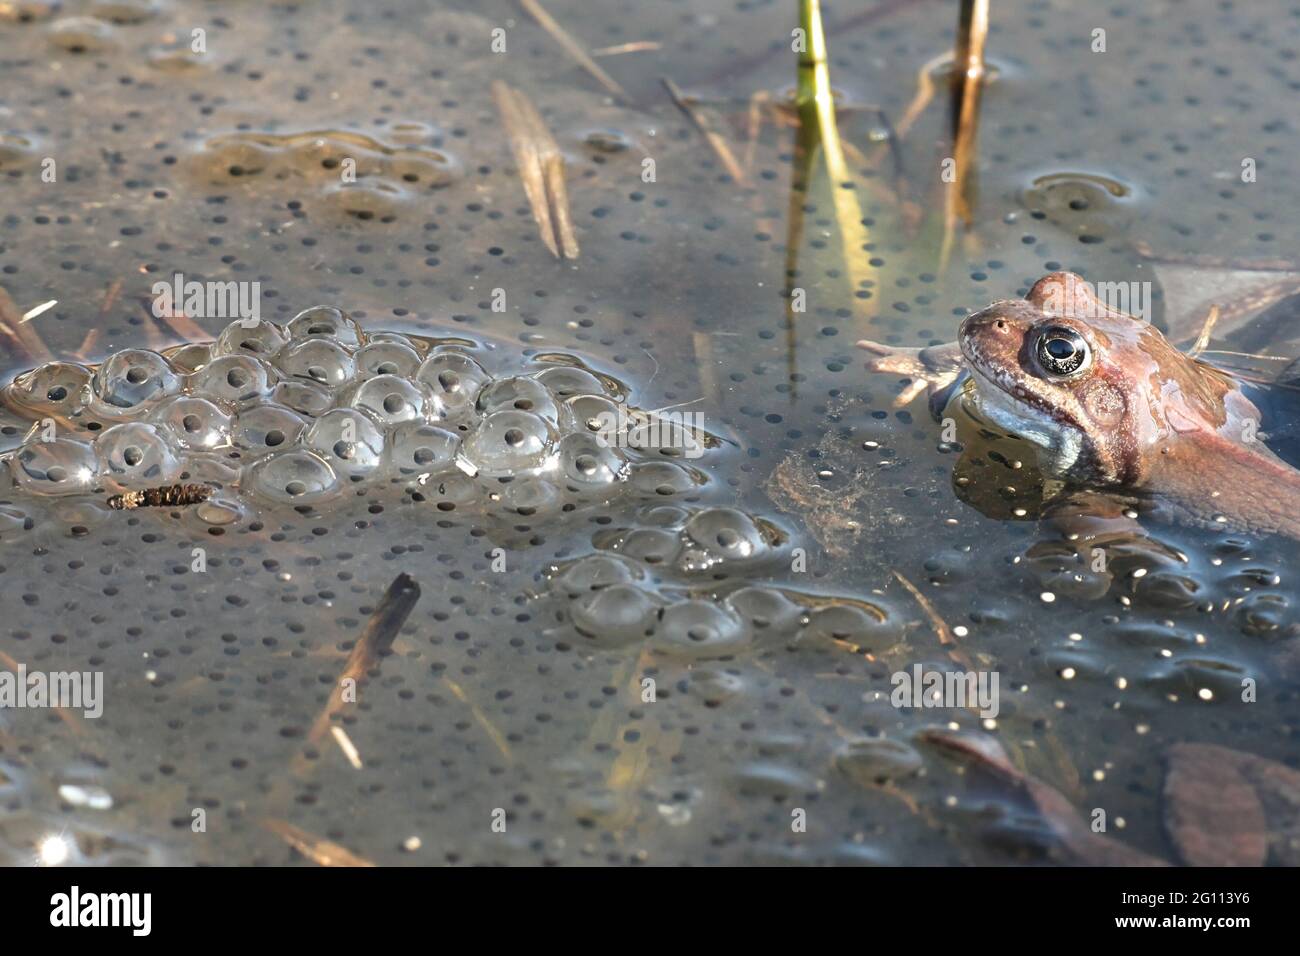 Grenouille rousse, Rana temporaria, également connu sous le nom de l'intérêt commun, grenouille grenouille commune européenne et de l'herbe, la grenouille sur un étang rempli de frayer Banque D'Images